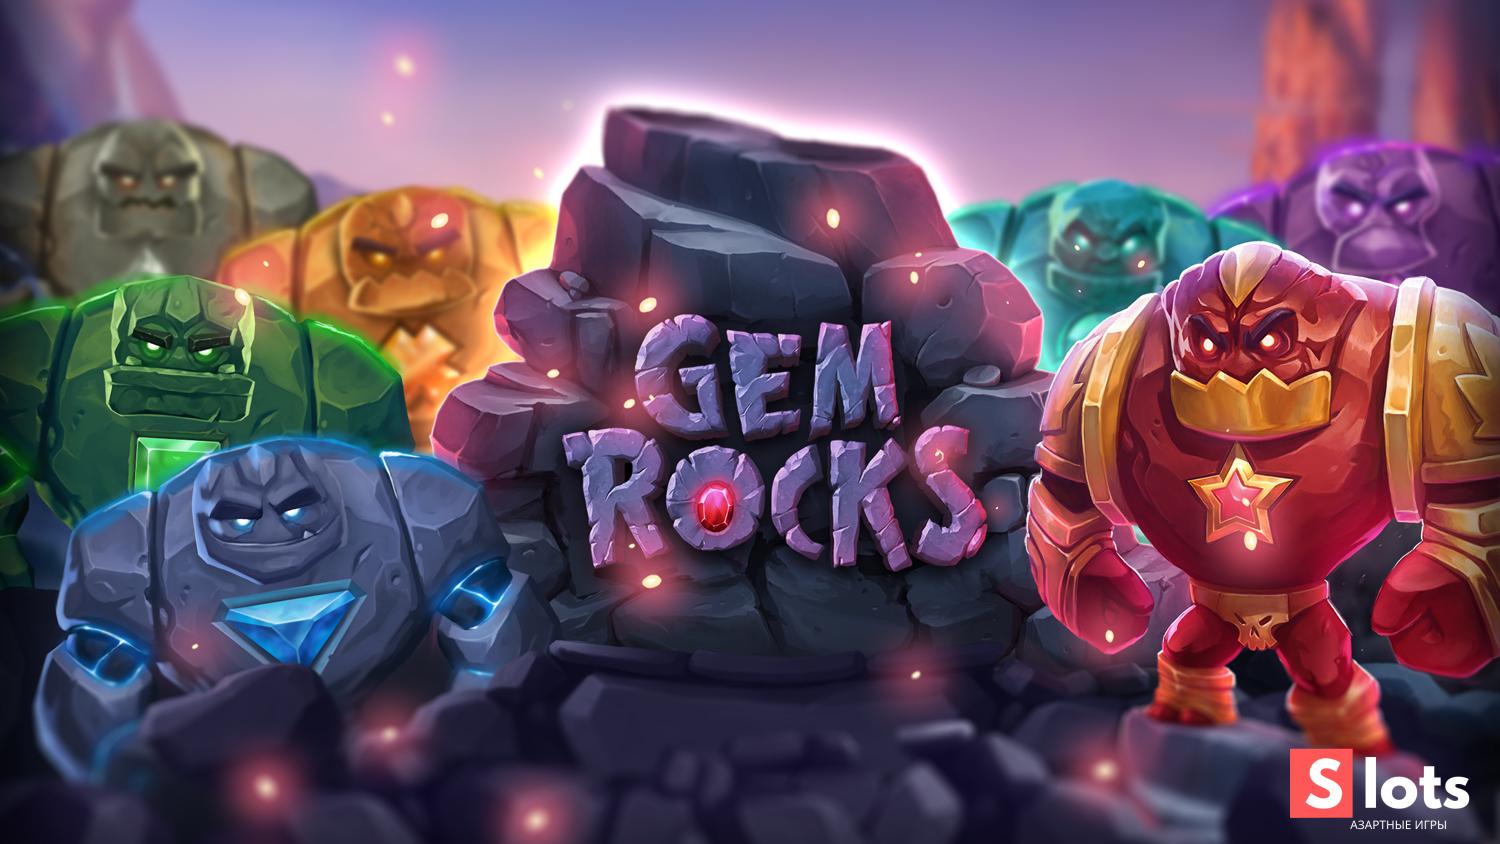 Gem Rocks